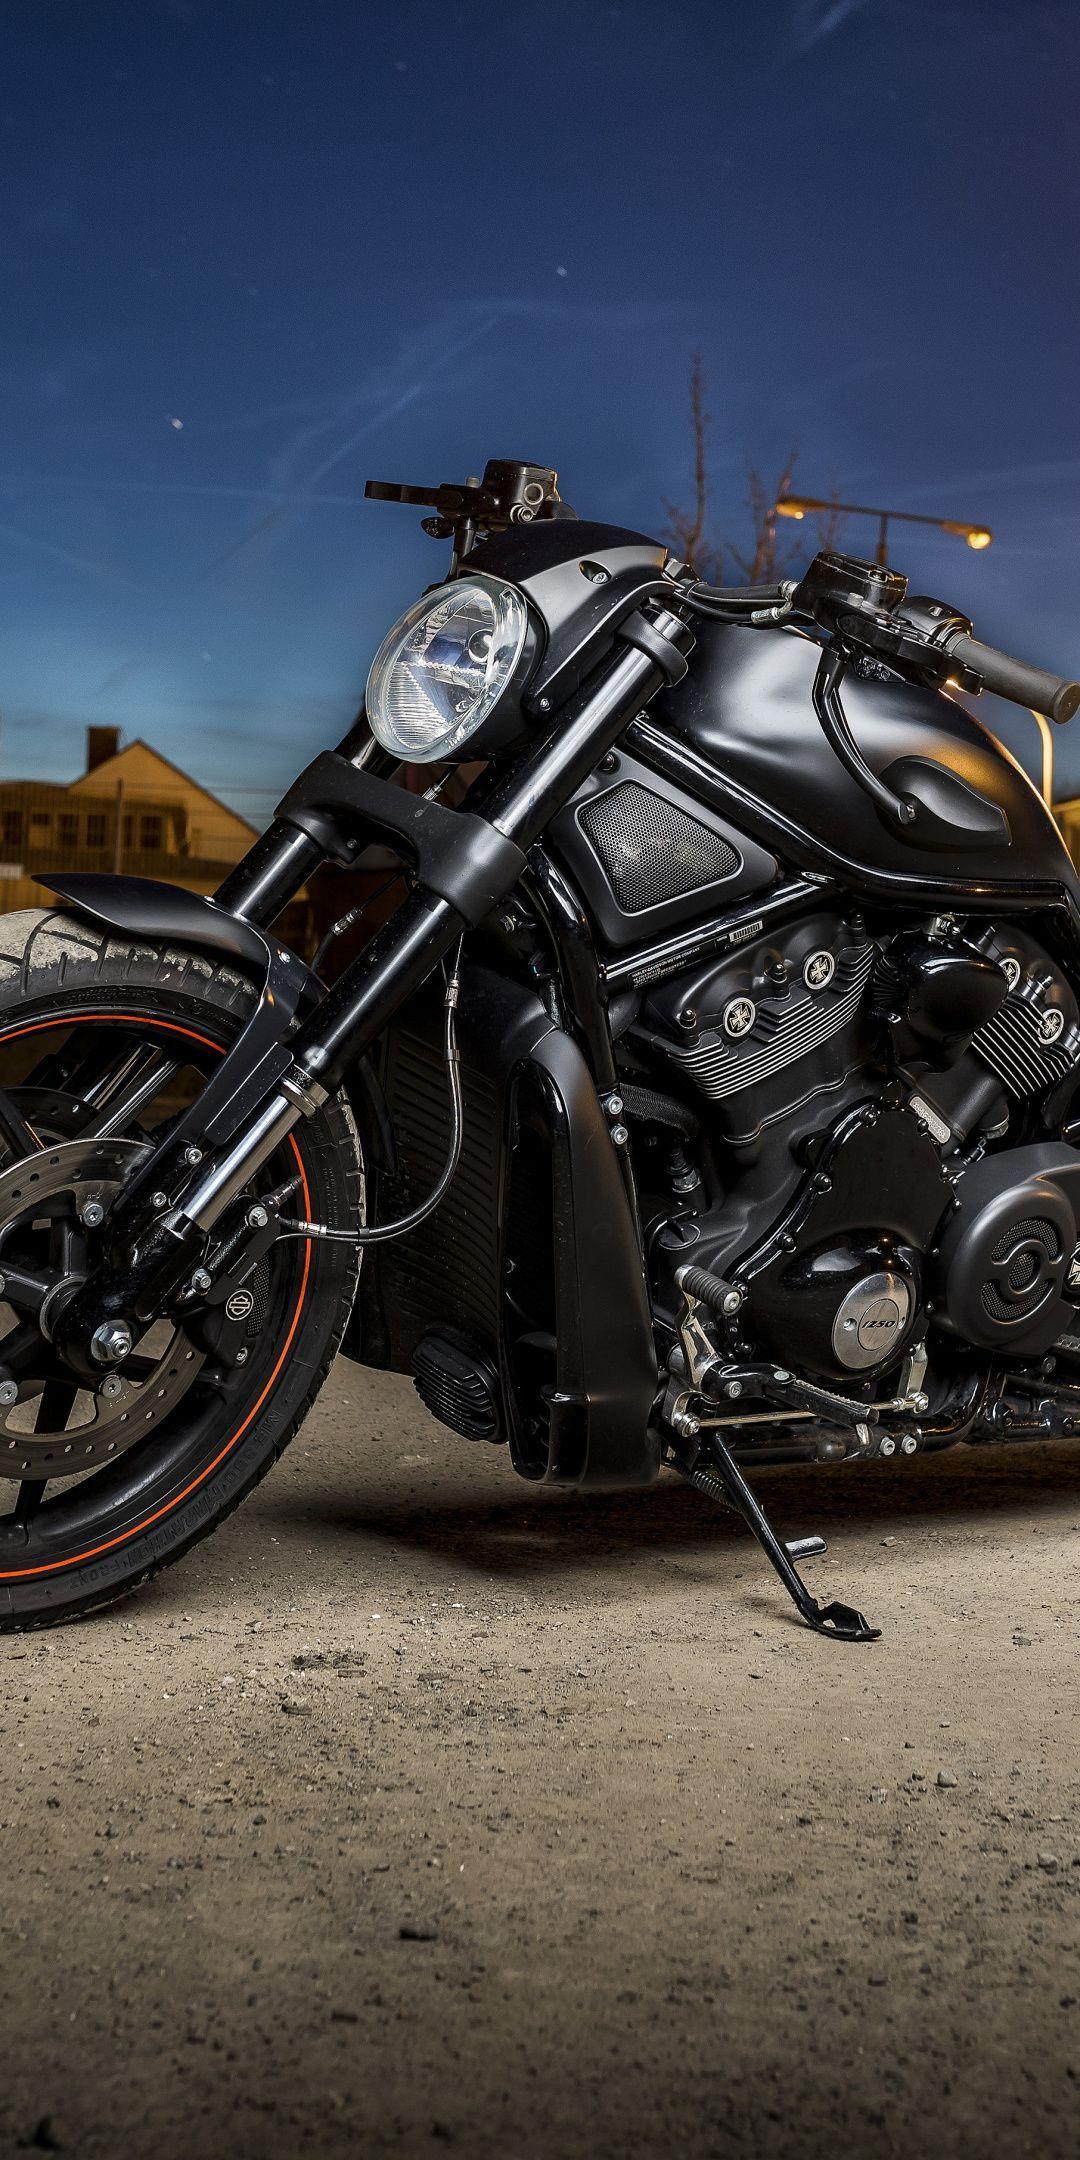 Black HD Motorcycle Wallpapers - Top Free Black HD Motorcycle